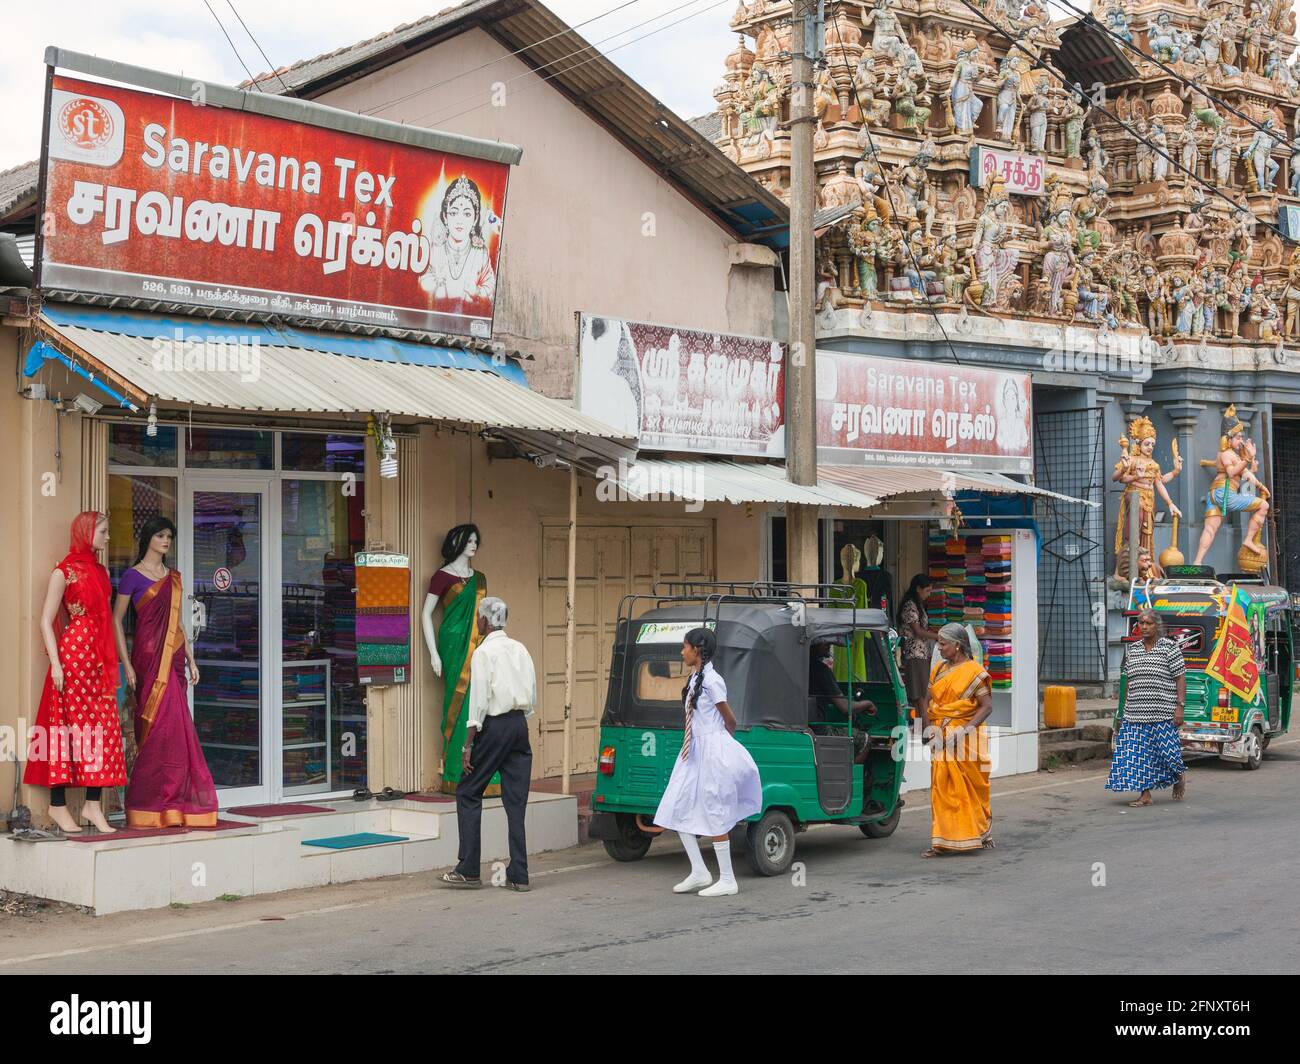 La famiglia entra nel negozio di abbigliamento Saravana Tex adiacente al Tempio di Nallur Sivan, Jaffna, Provincia del Nord, Sri Lanka Foto Stock